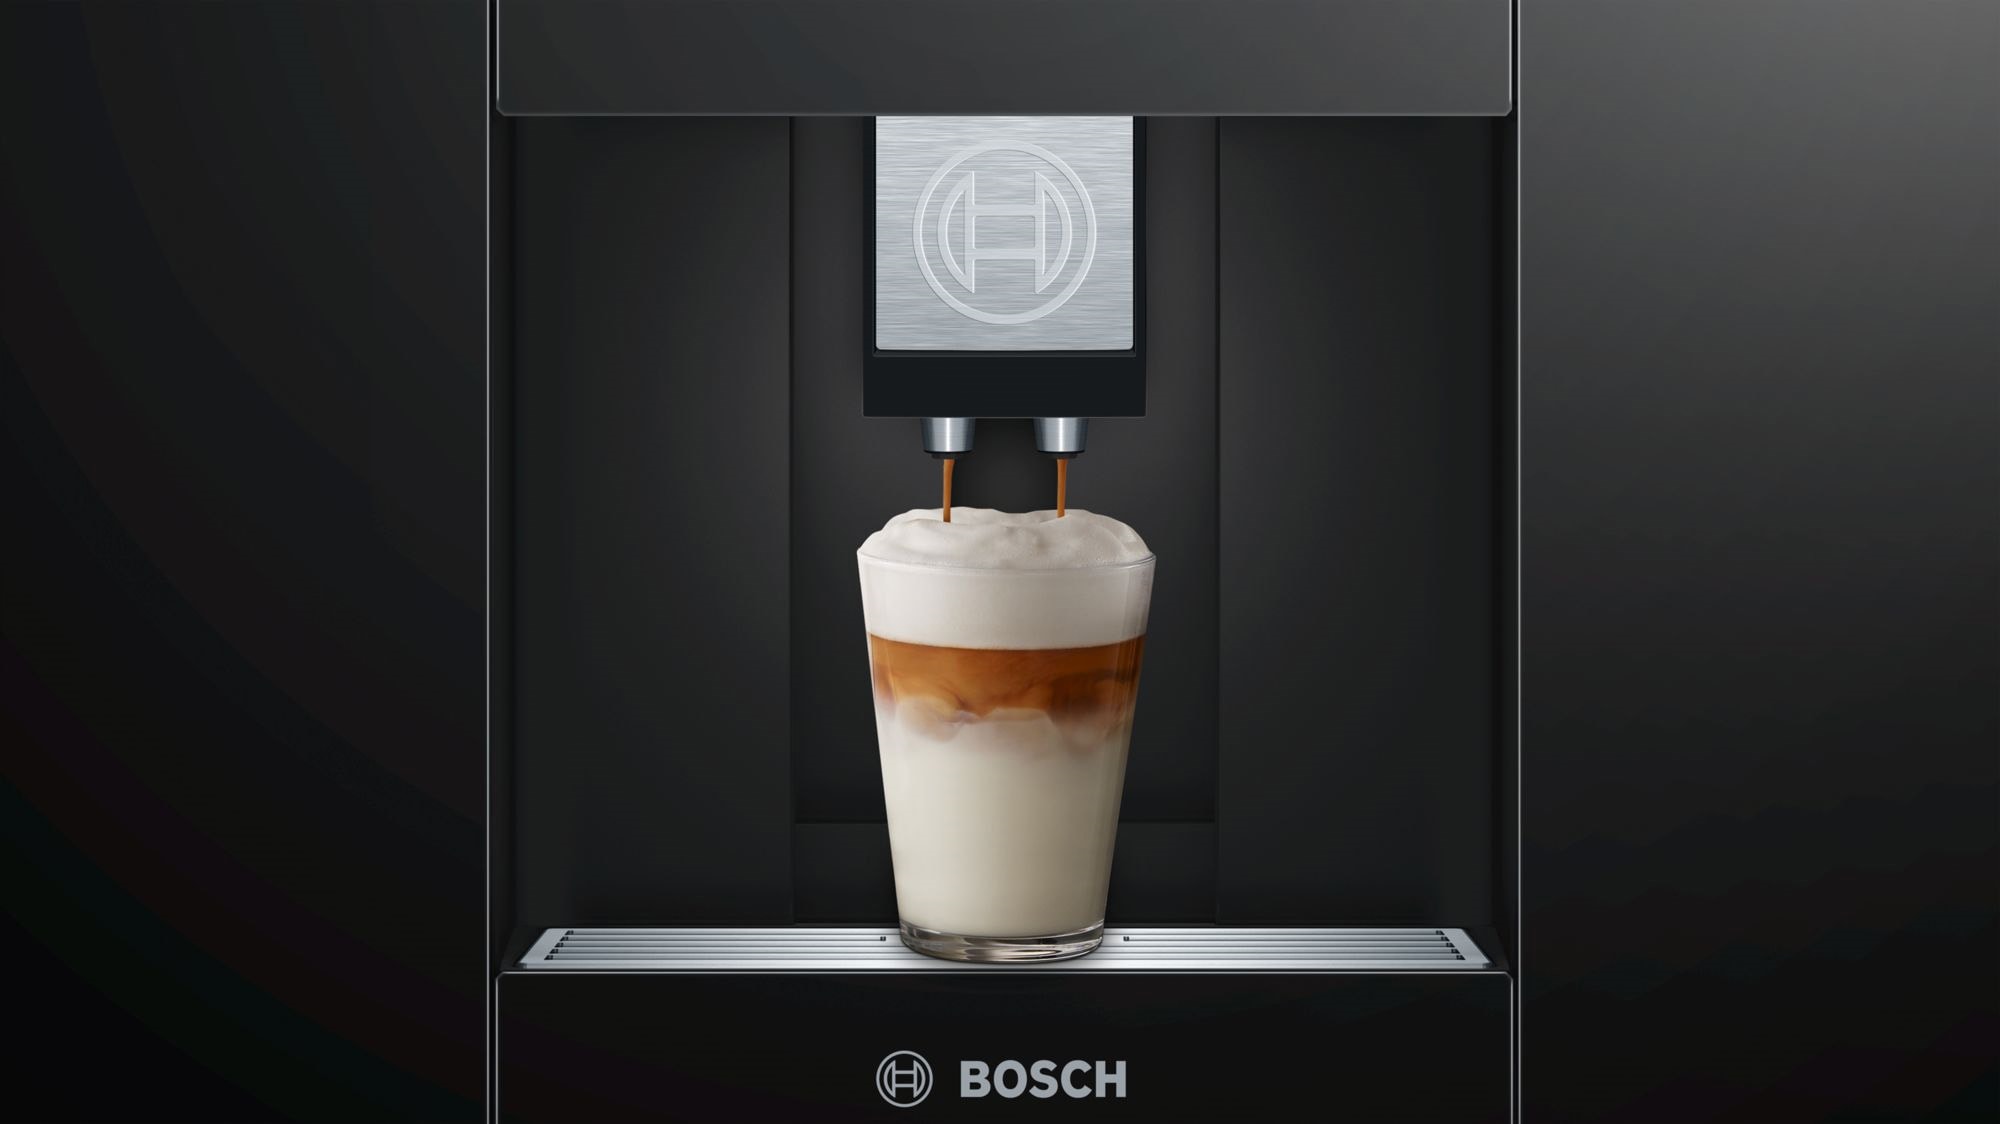 Cette machine à café Bosch Tassimo passe sous les 30 euros avec cette offre  en pack limitée